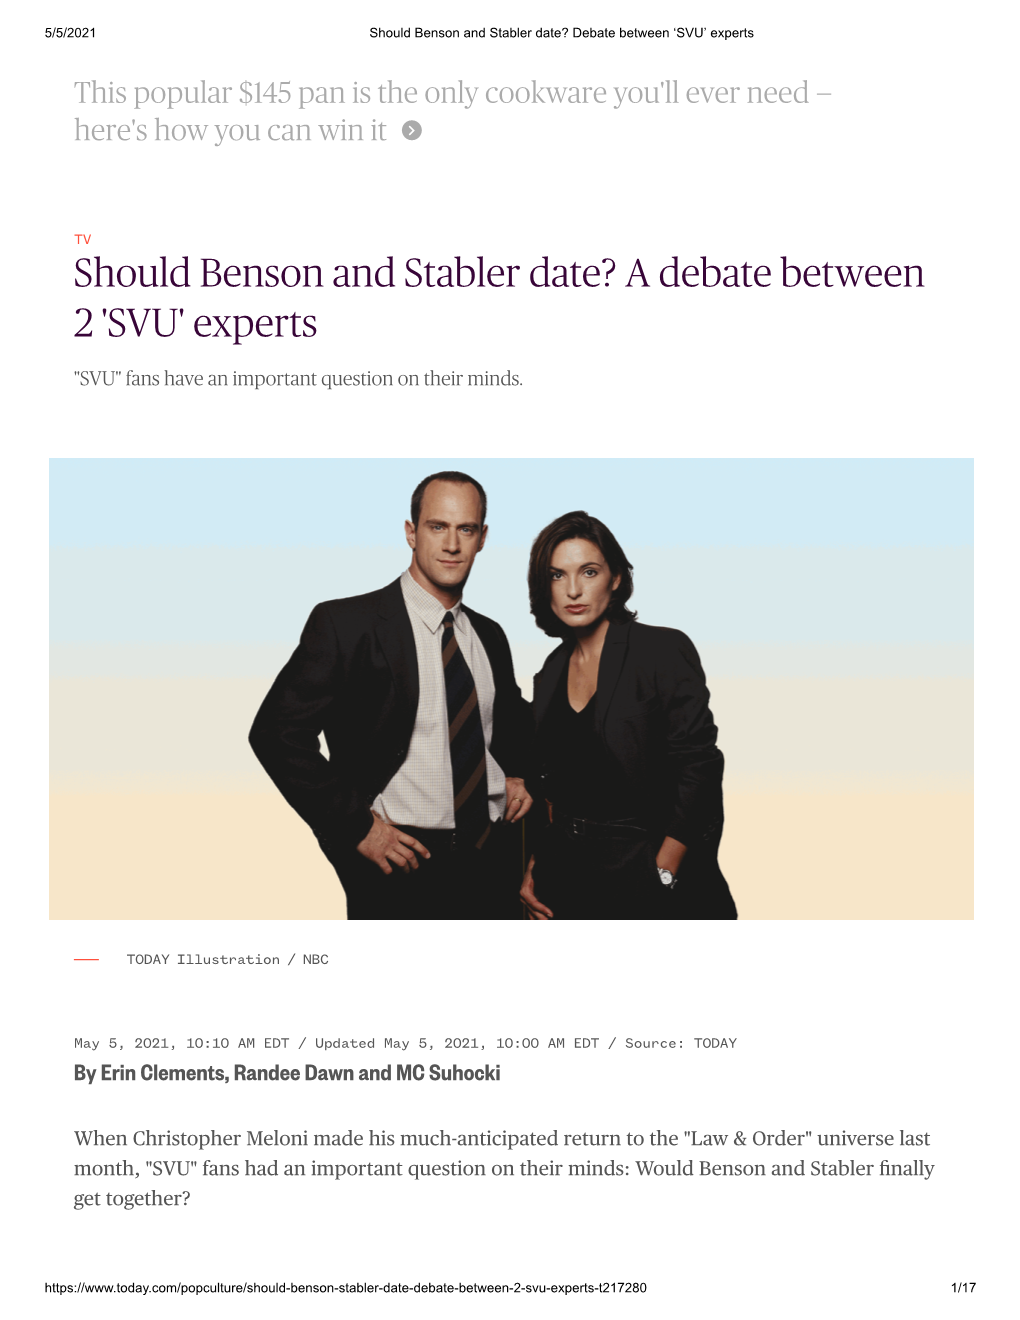 Should Benson and Stabler Date? Debate Between ‘SVU’ Experts